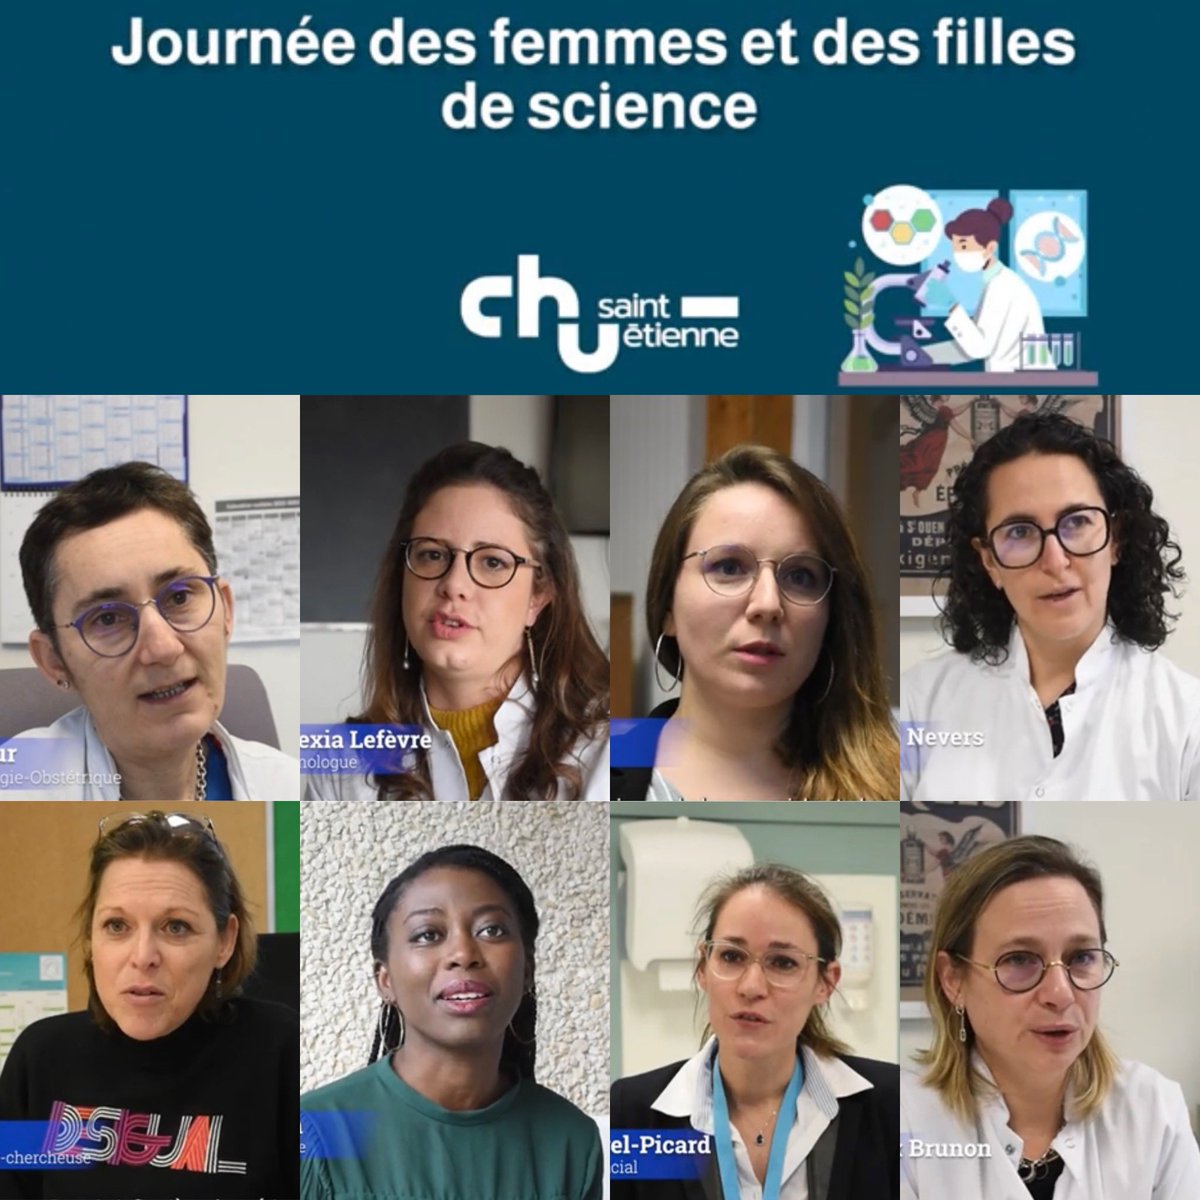 [#WomenScienceDay]
6 portraits pour valoriser l’engagement des femmes et filles de science au @ChuSaintEtienne et à la @Facmedecine_UJM 
🧑🏼‍⚕️👩🏽‍⚕️👩🏽‍🔬👱🏼‍♀️🧑🏻
#femmesdesante
🎥  YouTube @ChuSaintEtienne